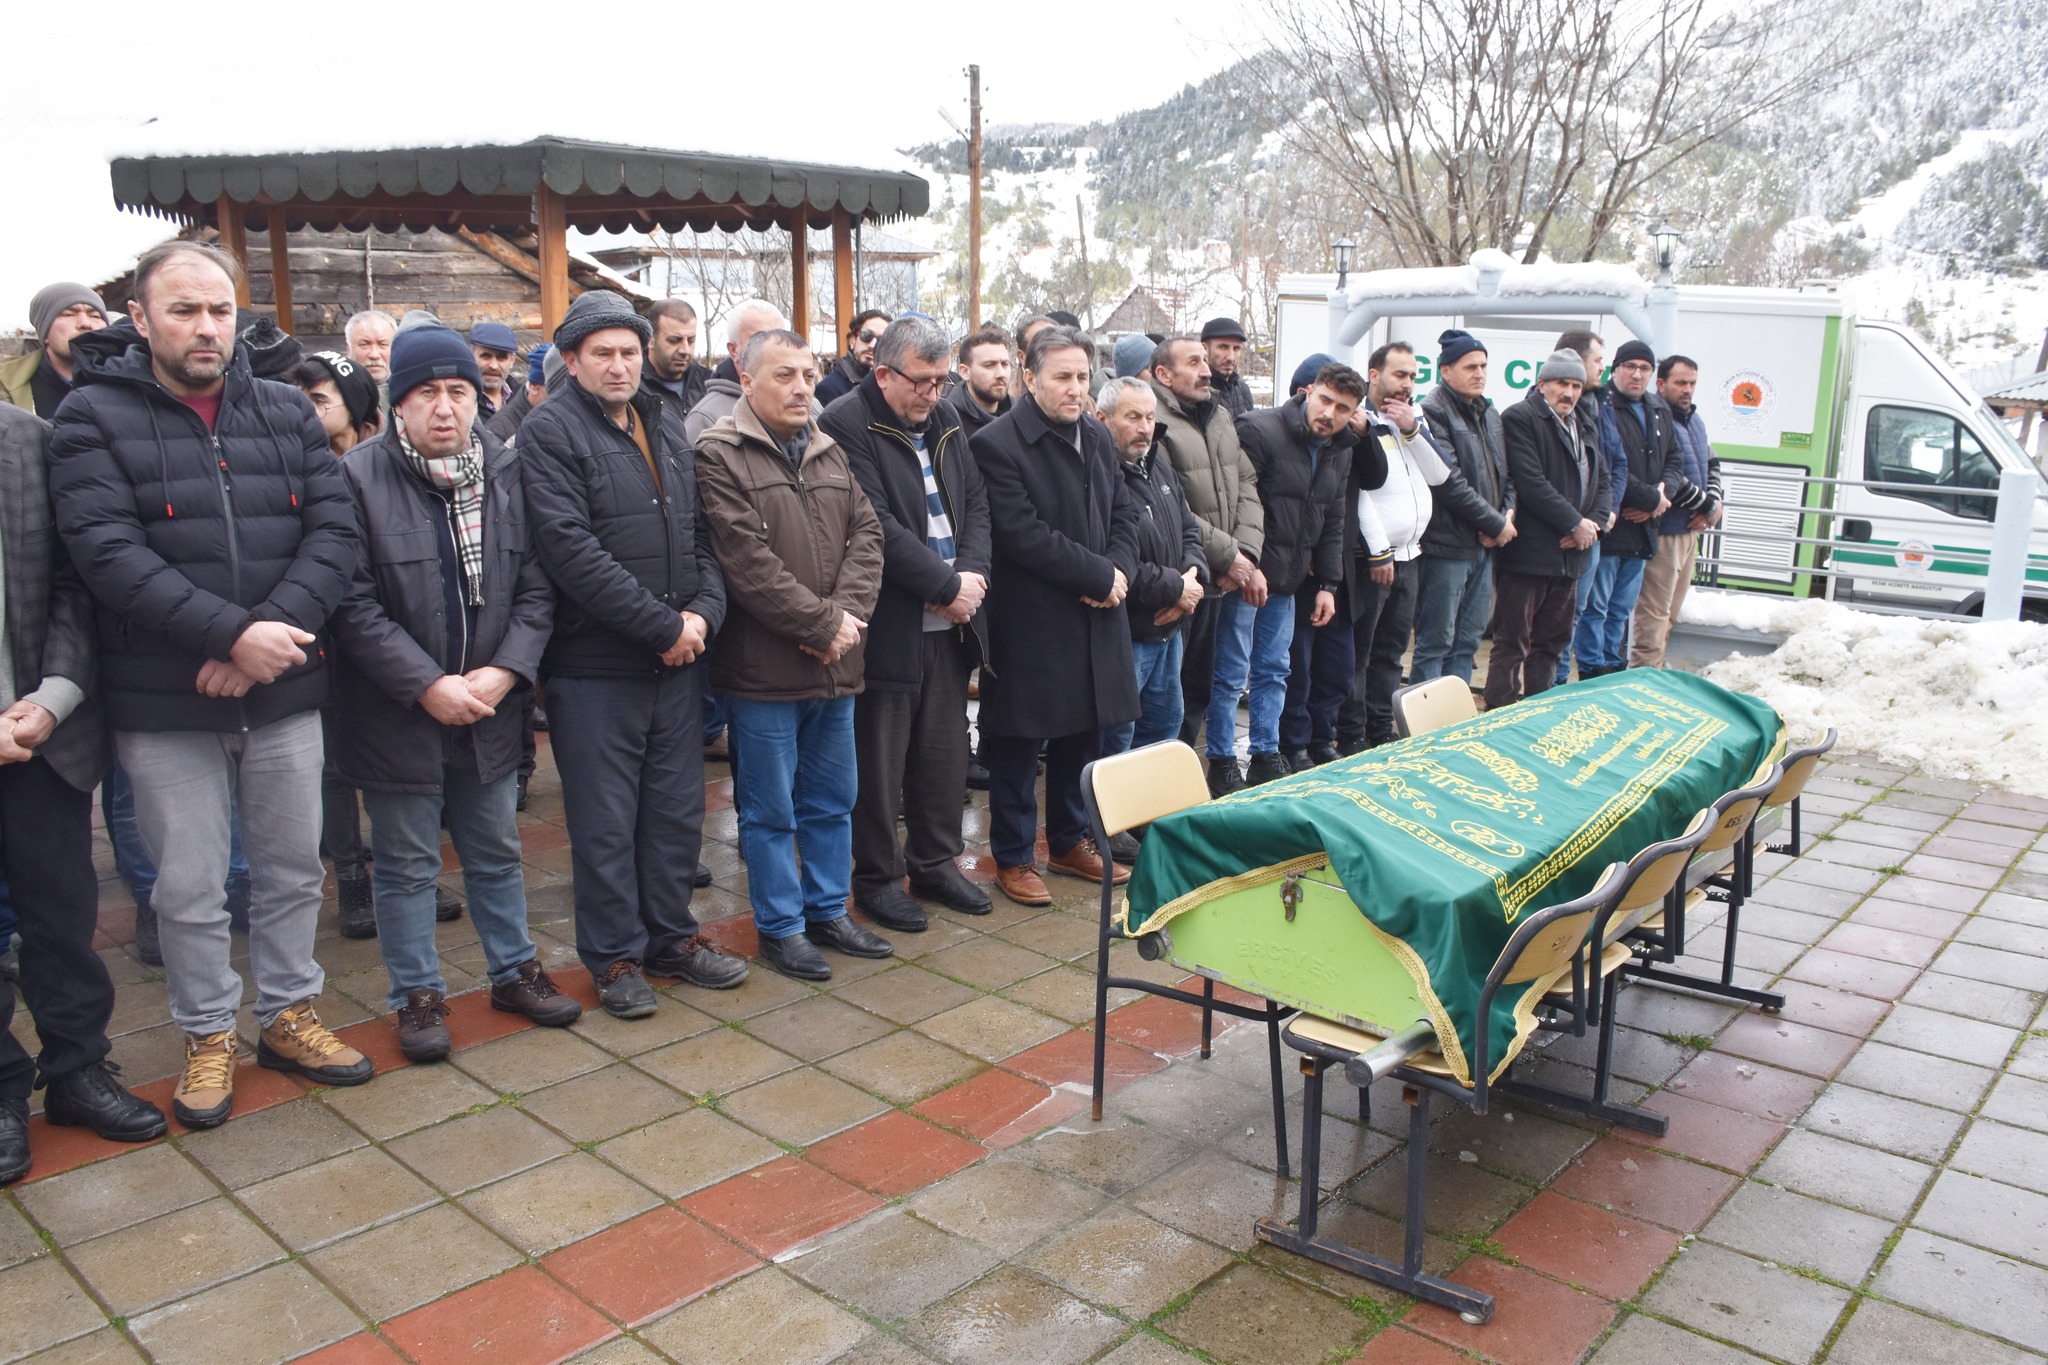 Belediye Başkanımız Hüseyin Kıyma Çepni Karacababa Mahallesi halkından vefat eden Feyzul Arslan’ın cenaze namazına katılarak ailesine ve yakınlarına başsağlığında bulundu.